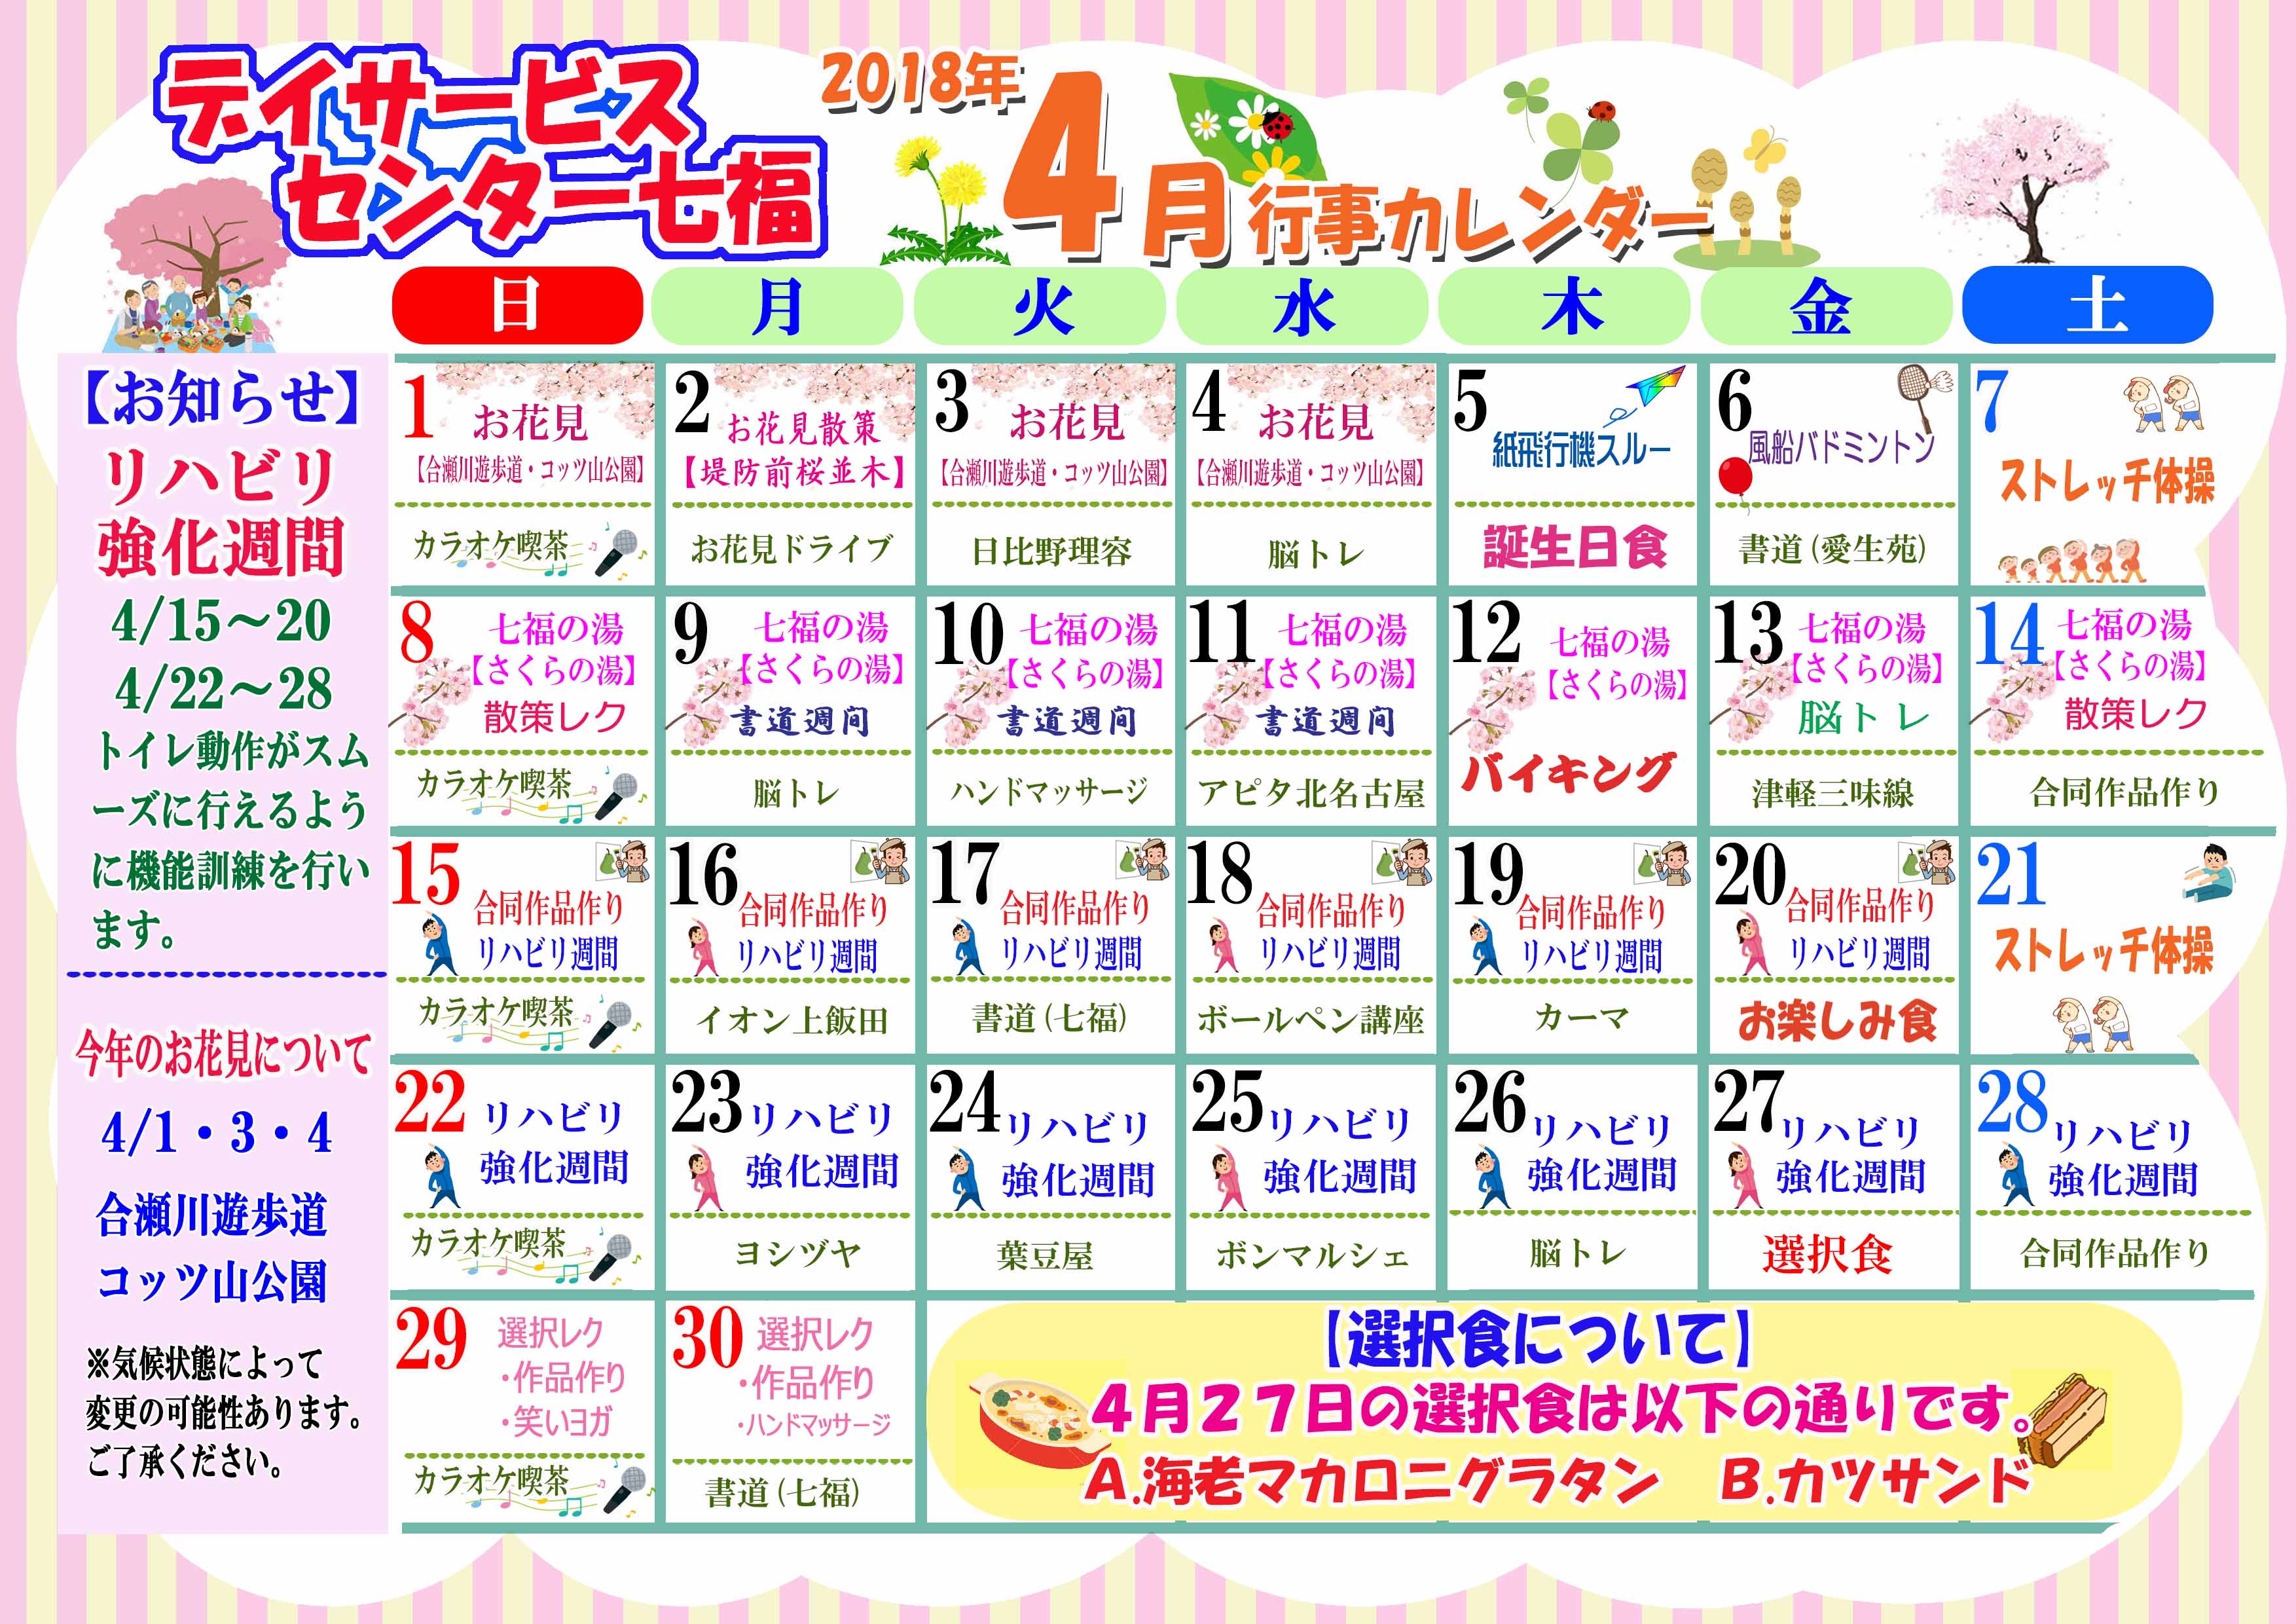 デイサービスセンター七福 4月のカレンダーが完成しました 名古屋で介護 福祉事業を展開する愛生福祉会